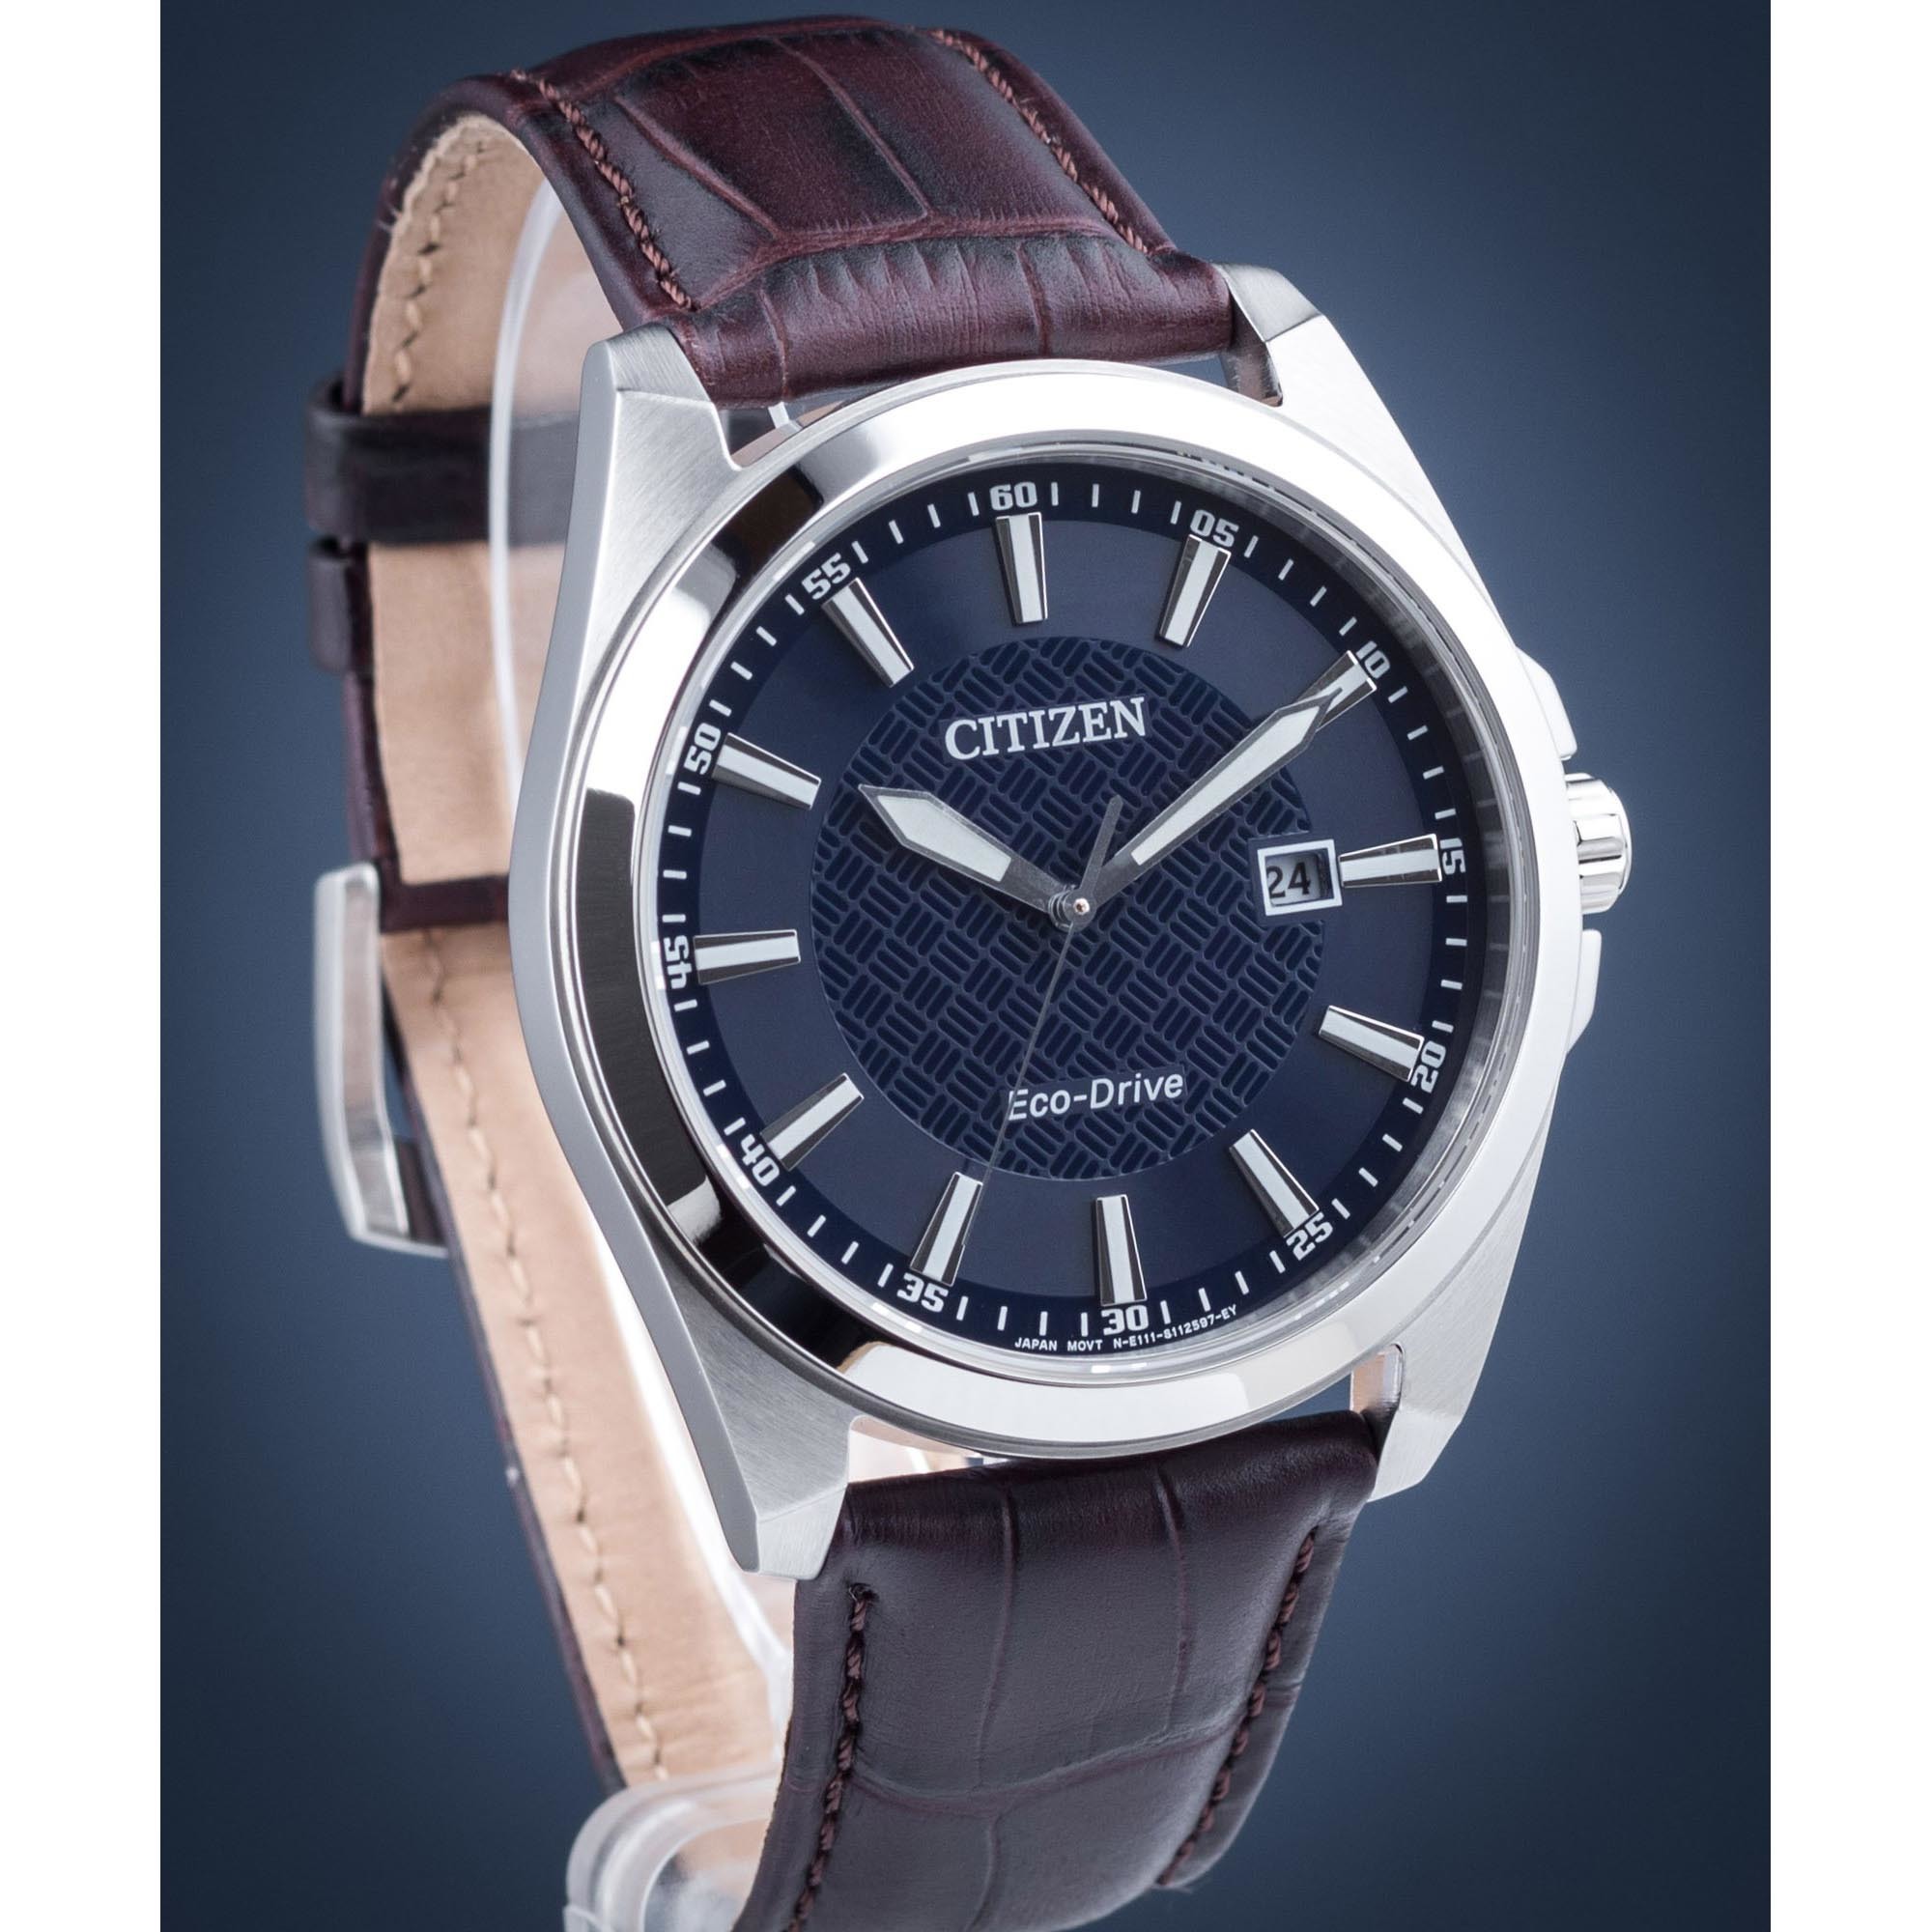 Citizen BM7108-22L купить | Оригинальные наручные часы Citizen Eco-Drive  BM7108-22L в интернет-магазине по низкой